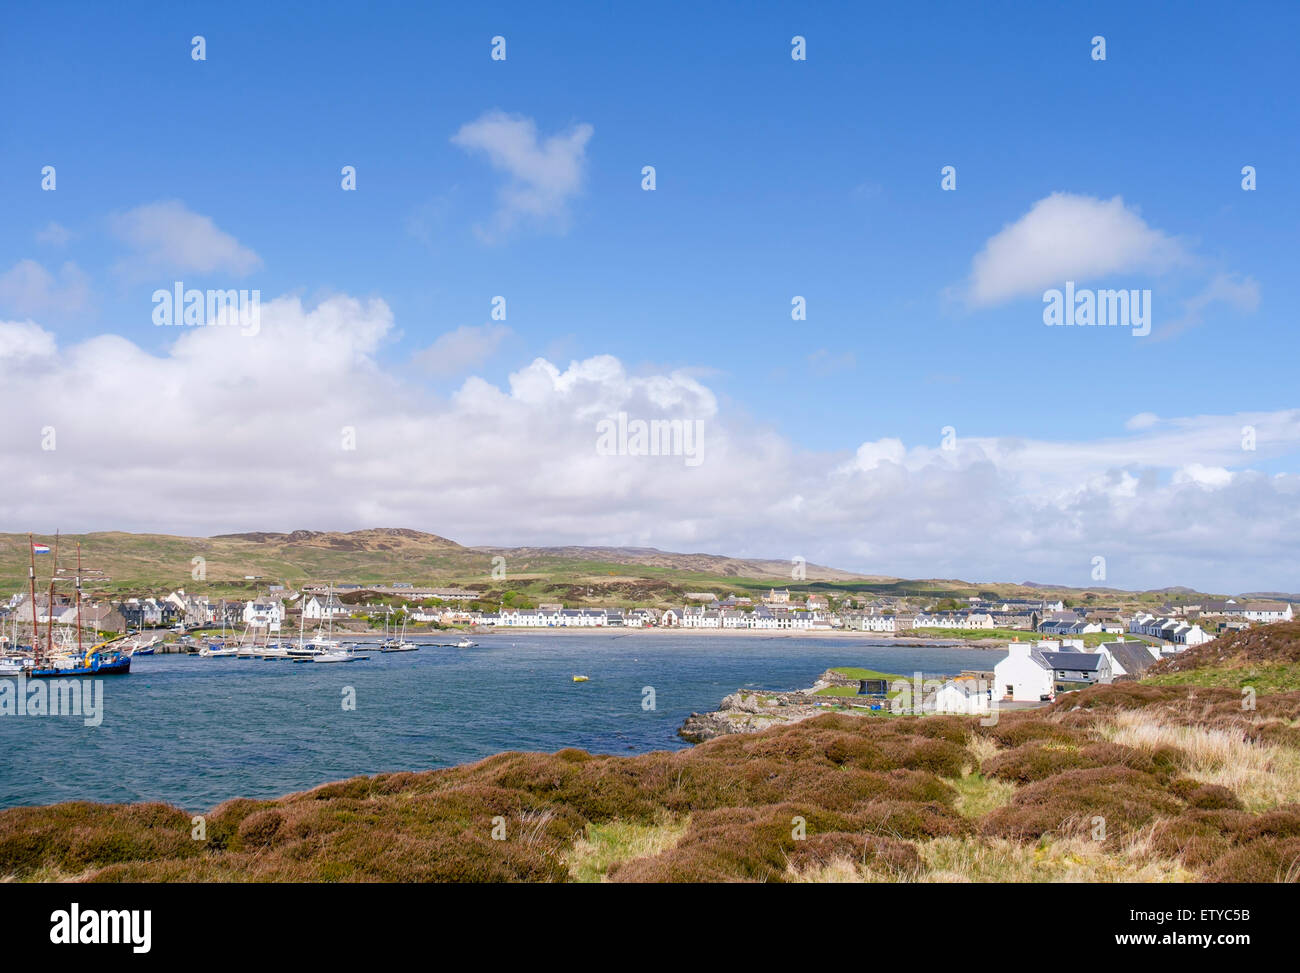 Vue sur port dans Leodamais Bay. Port Ellen, Isle of Islay, ARGYLL & BUTE, les Hébrides intérieures, Écosse, Royaume-Uni, Angleterre Banque D'Images